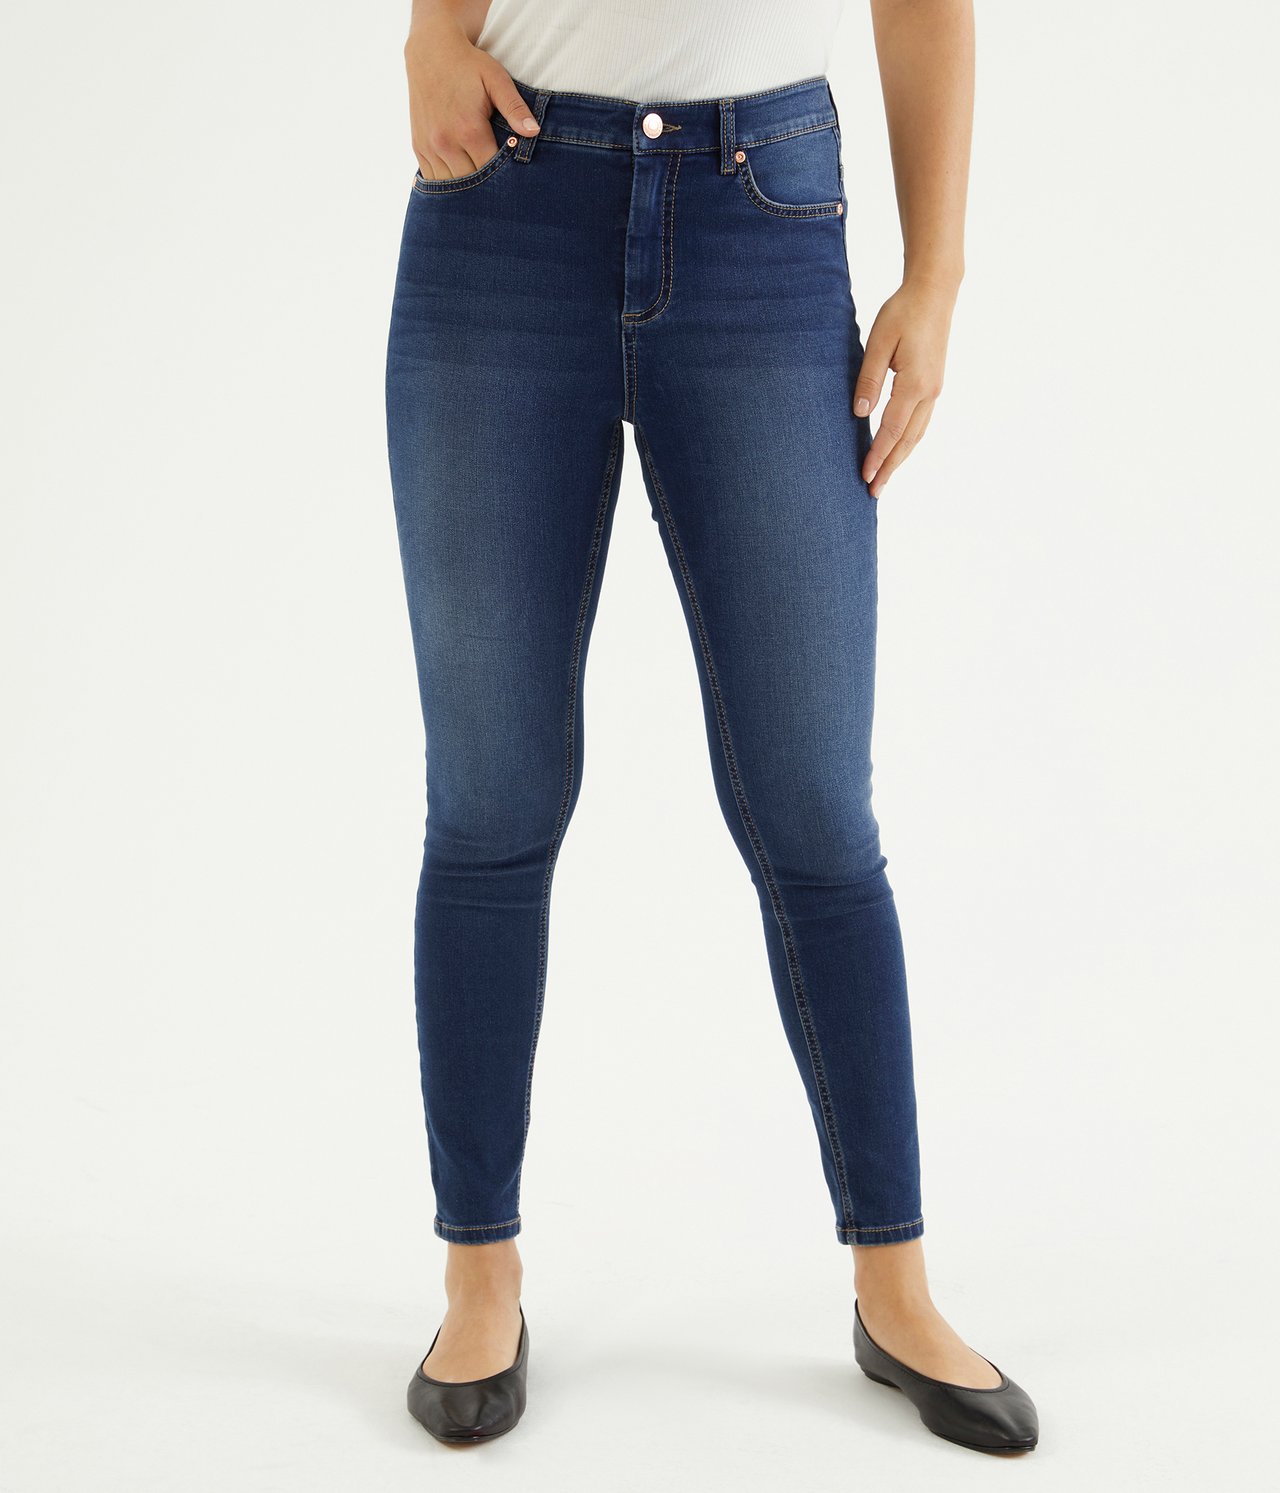 Super slim jeans short leg Tumma denimi - null - 2